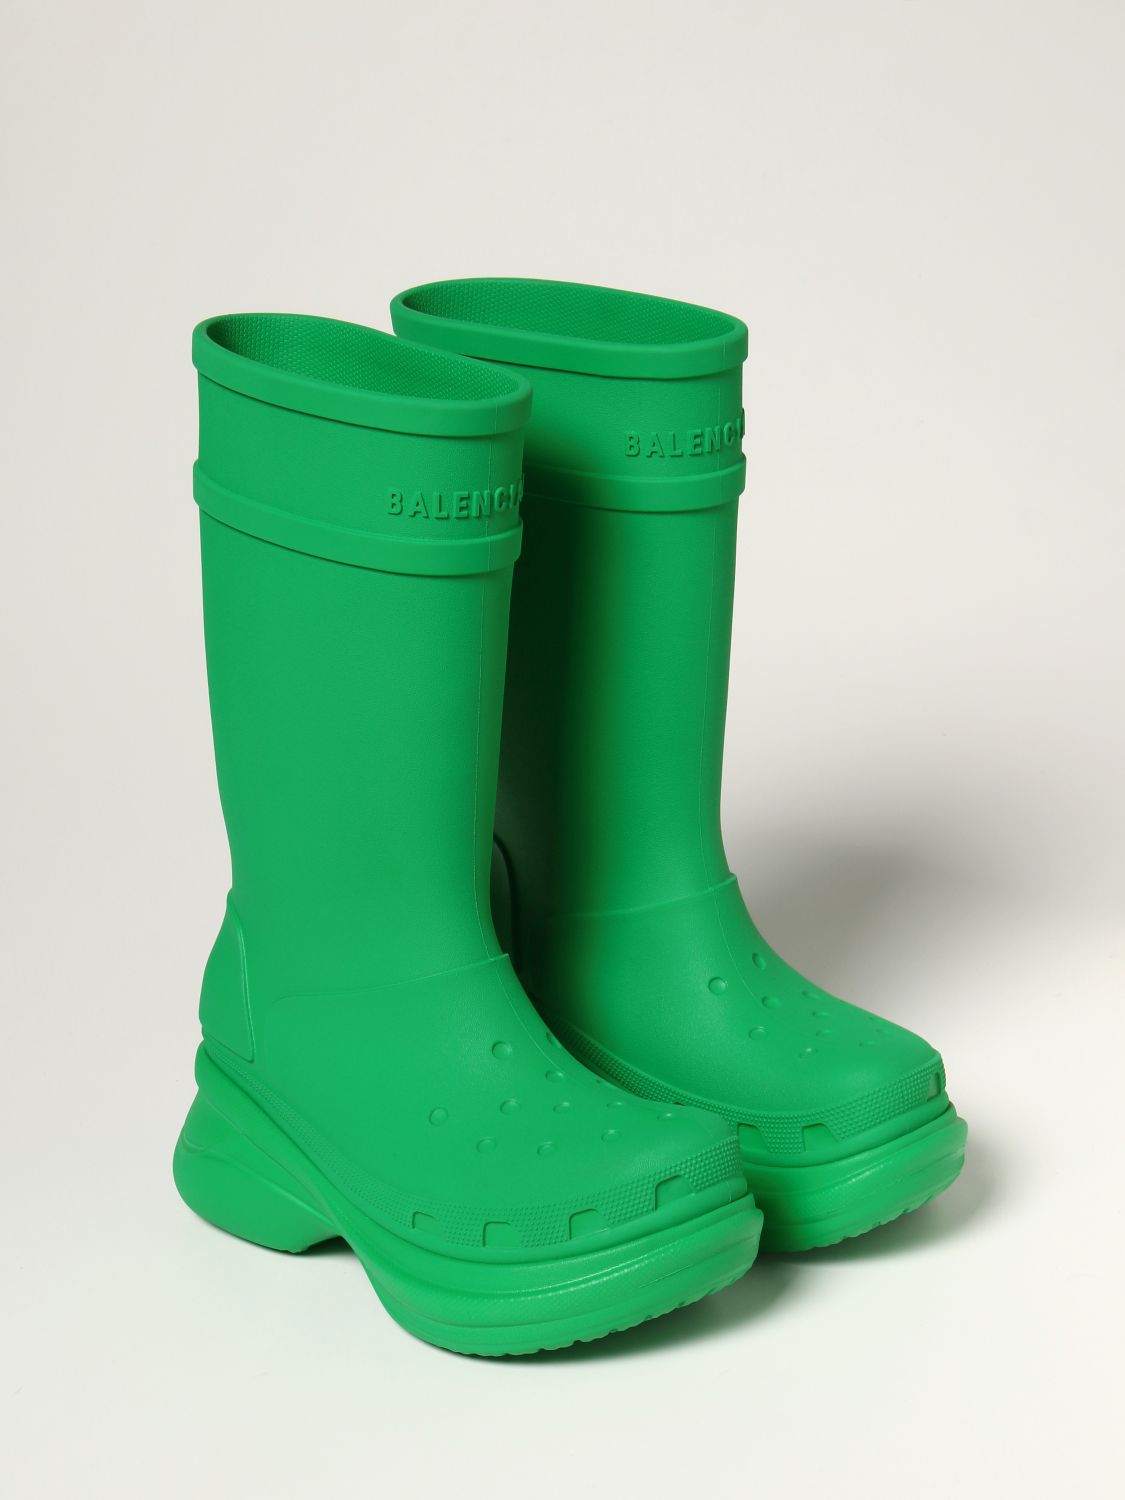 Boots Balenciaga Anthracite size 46 EU in Plastic  26822865